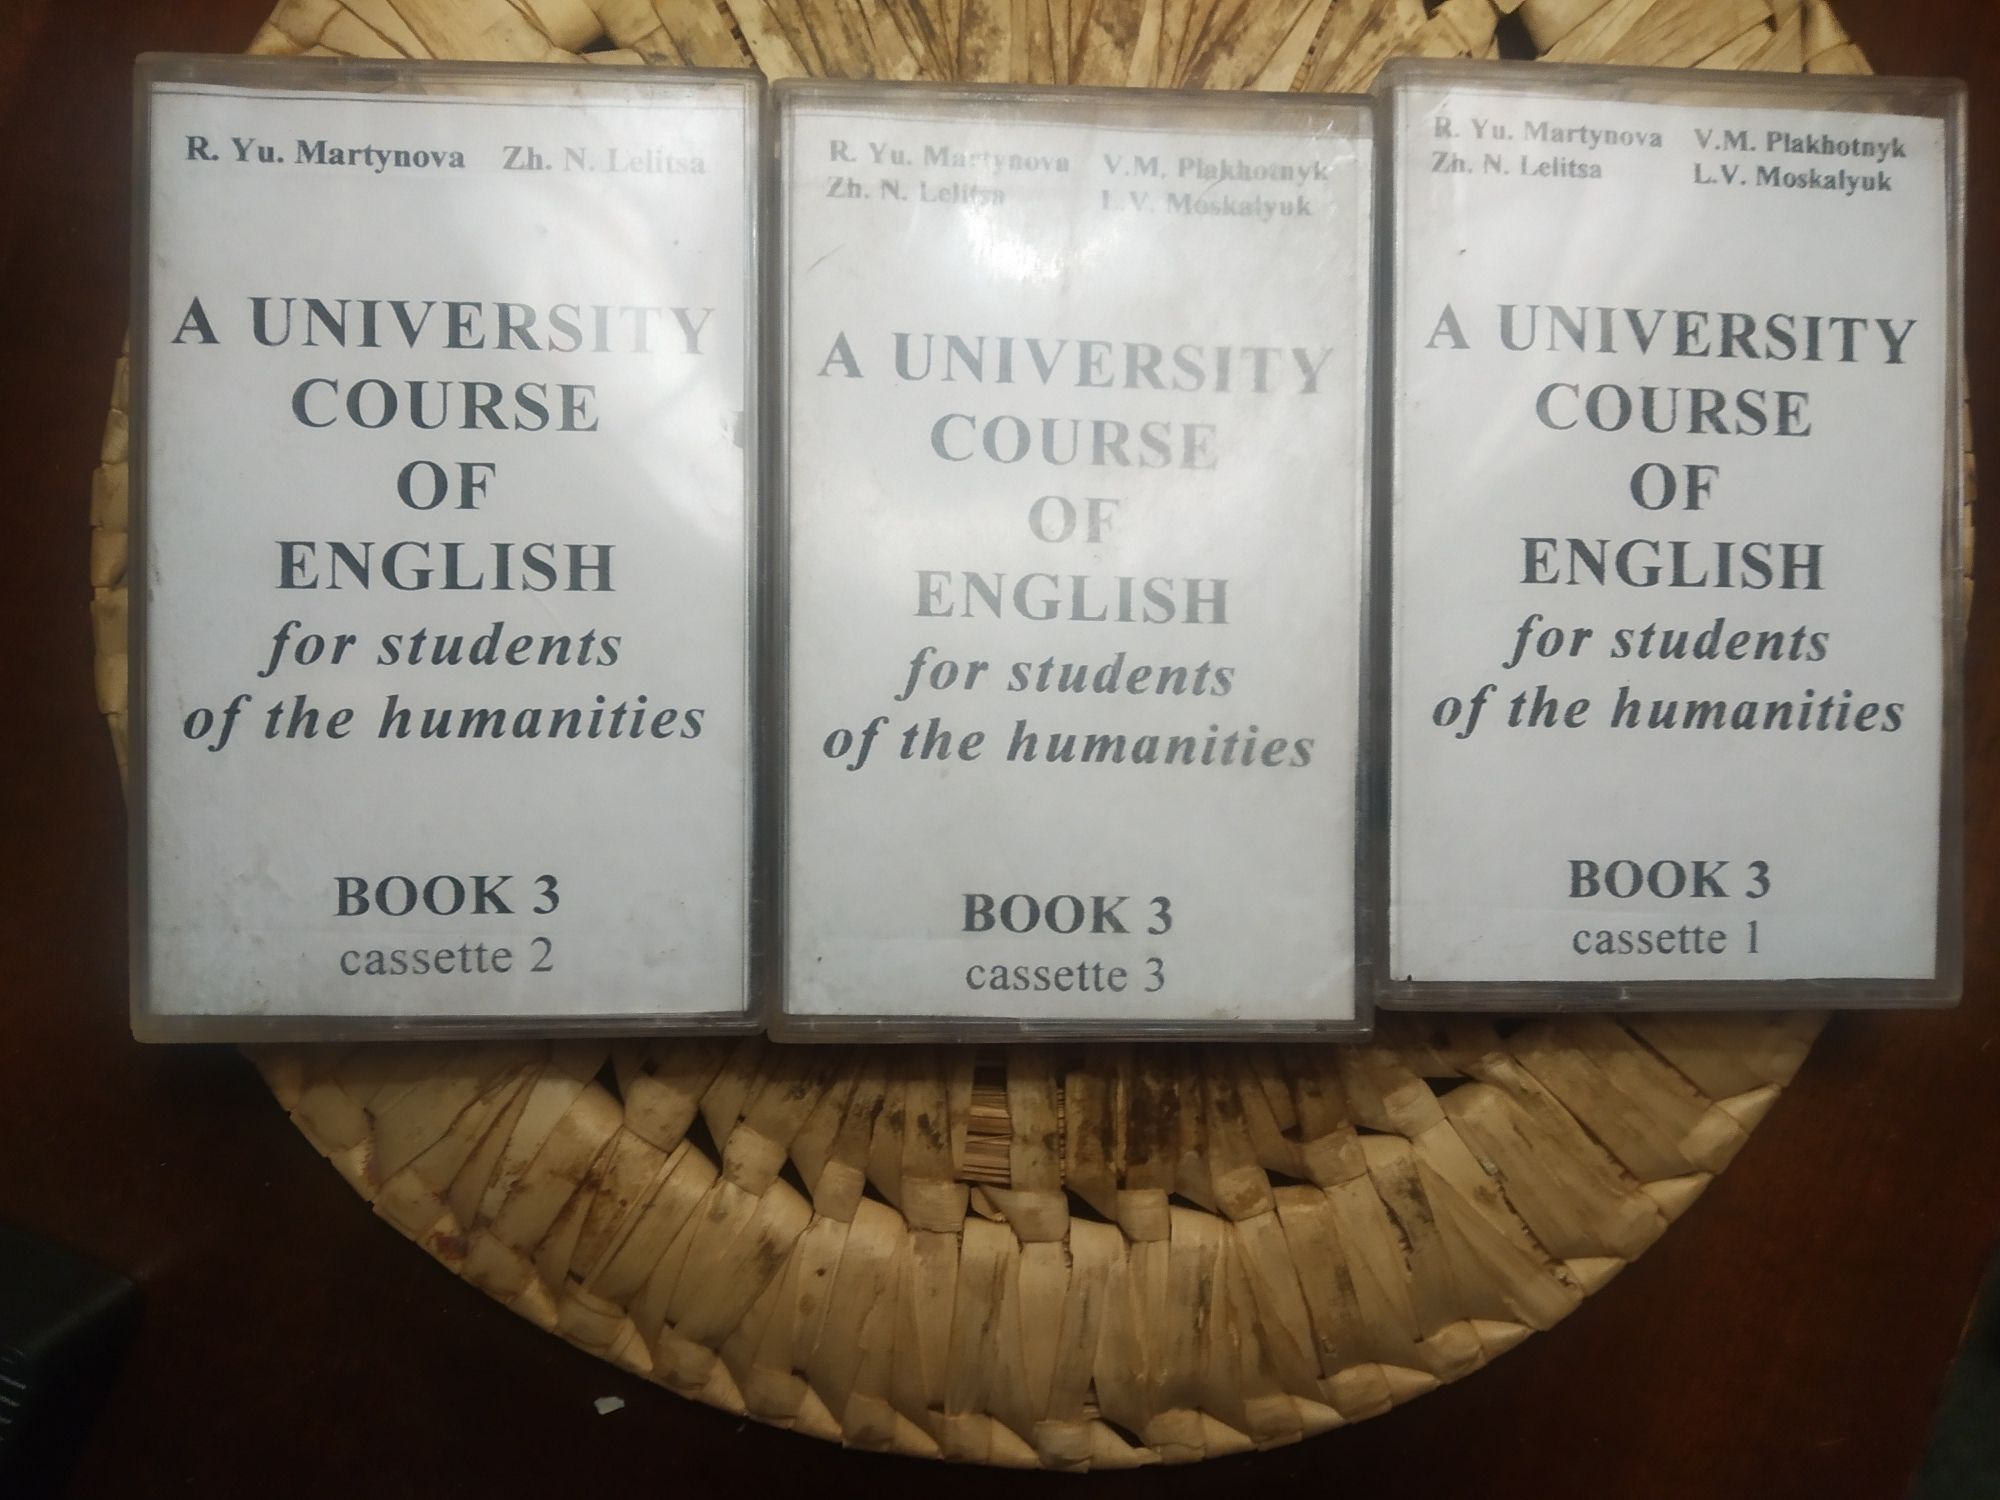 Аудиокассеты для изучения английского языка